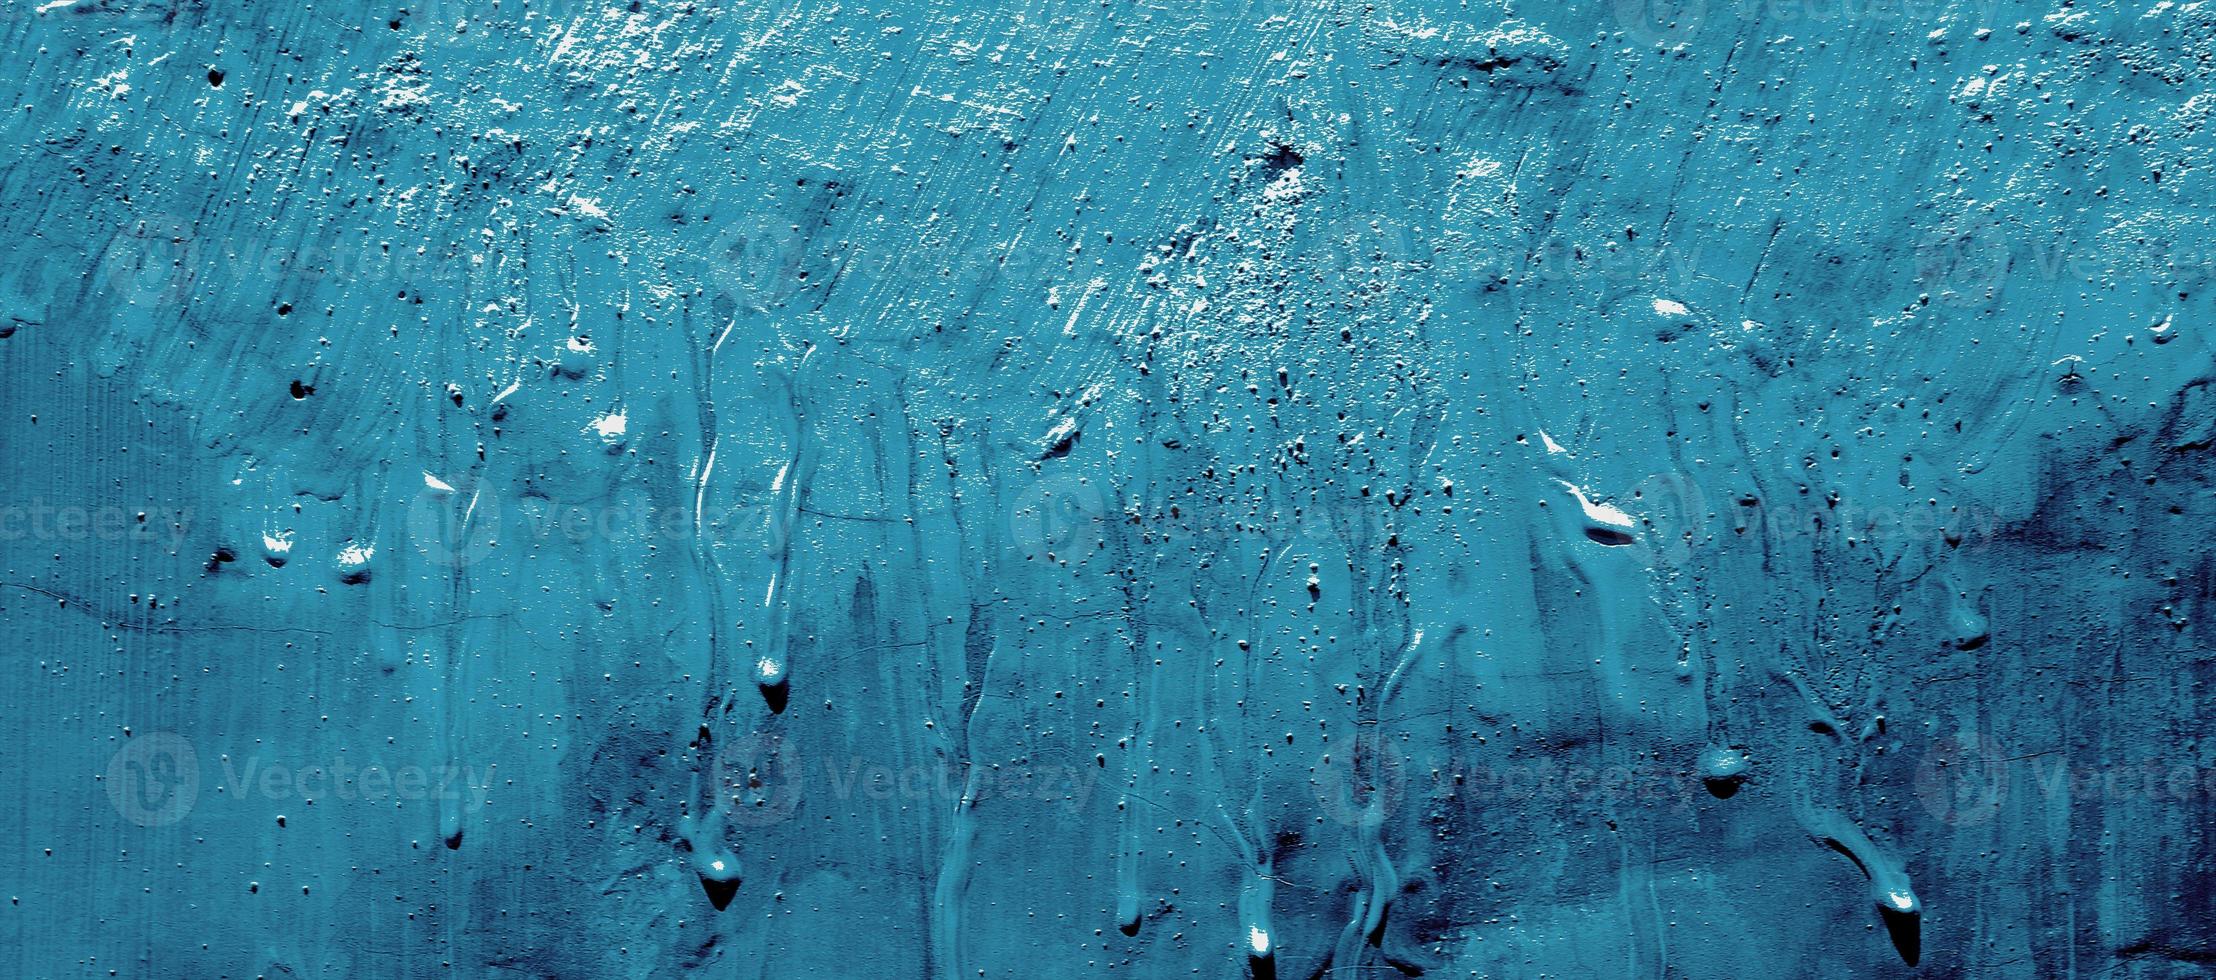 textura de fundo de parede de concreto em branco horizontal com gesso foto